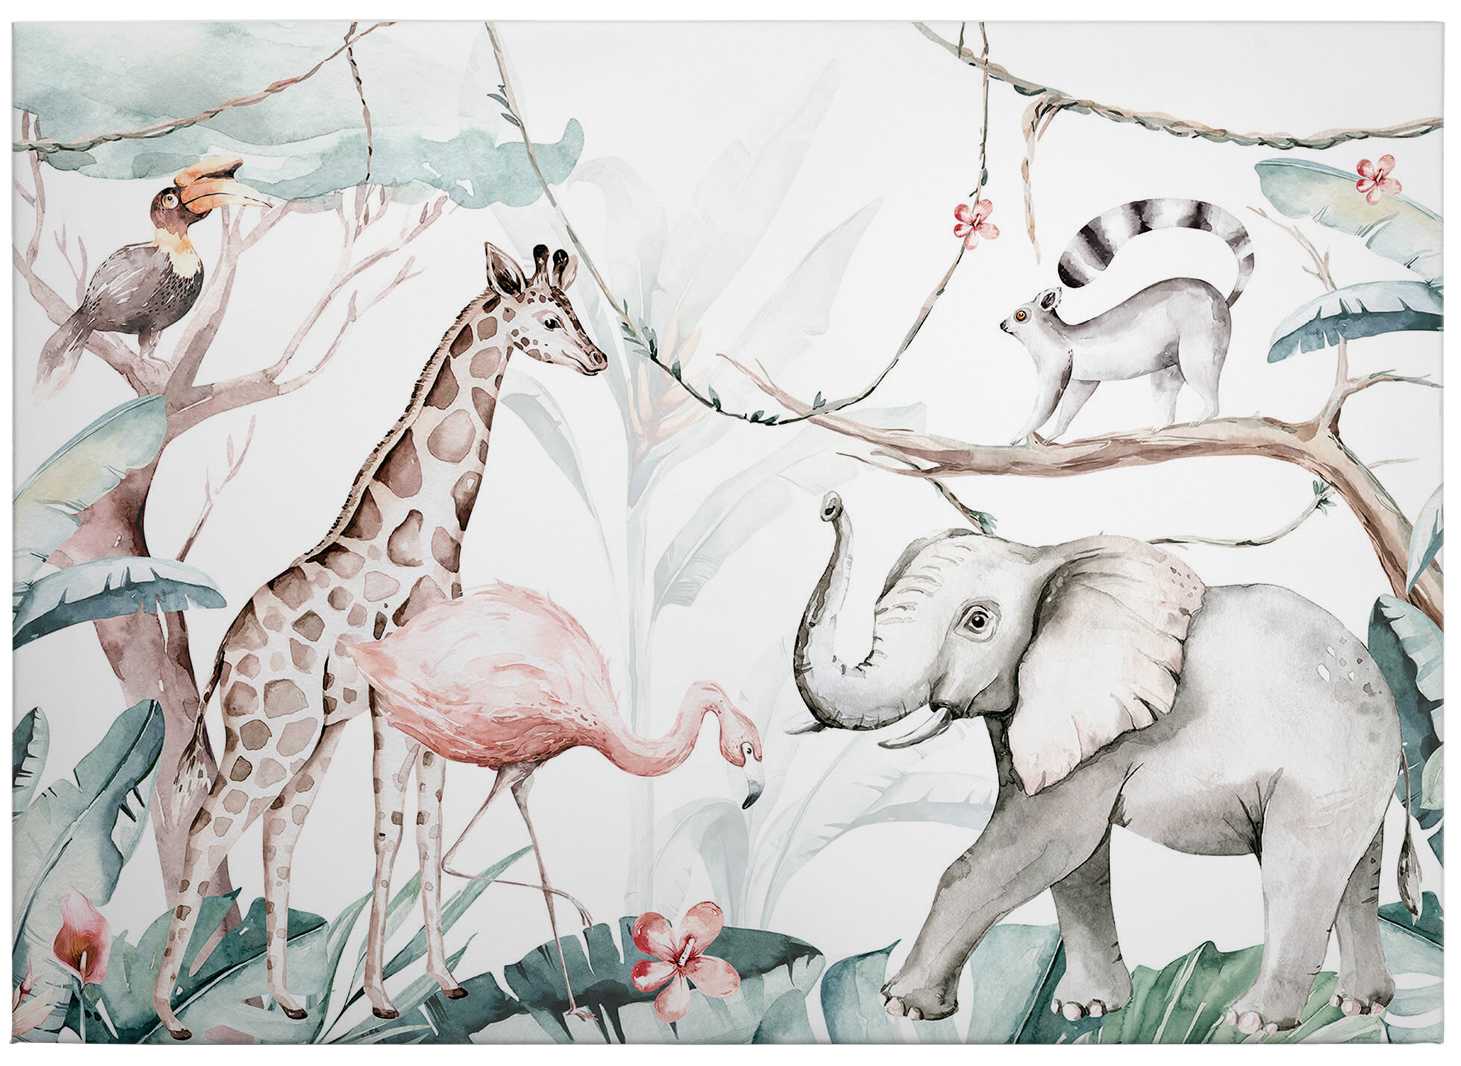             Kindercanvas schilderij Jungle dieren aquarel door Kvilis - 0,70 m x 0,50 m
        